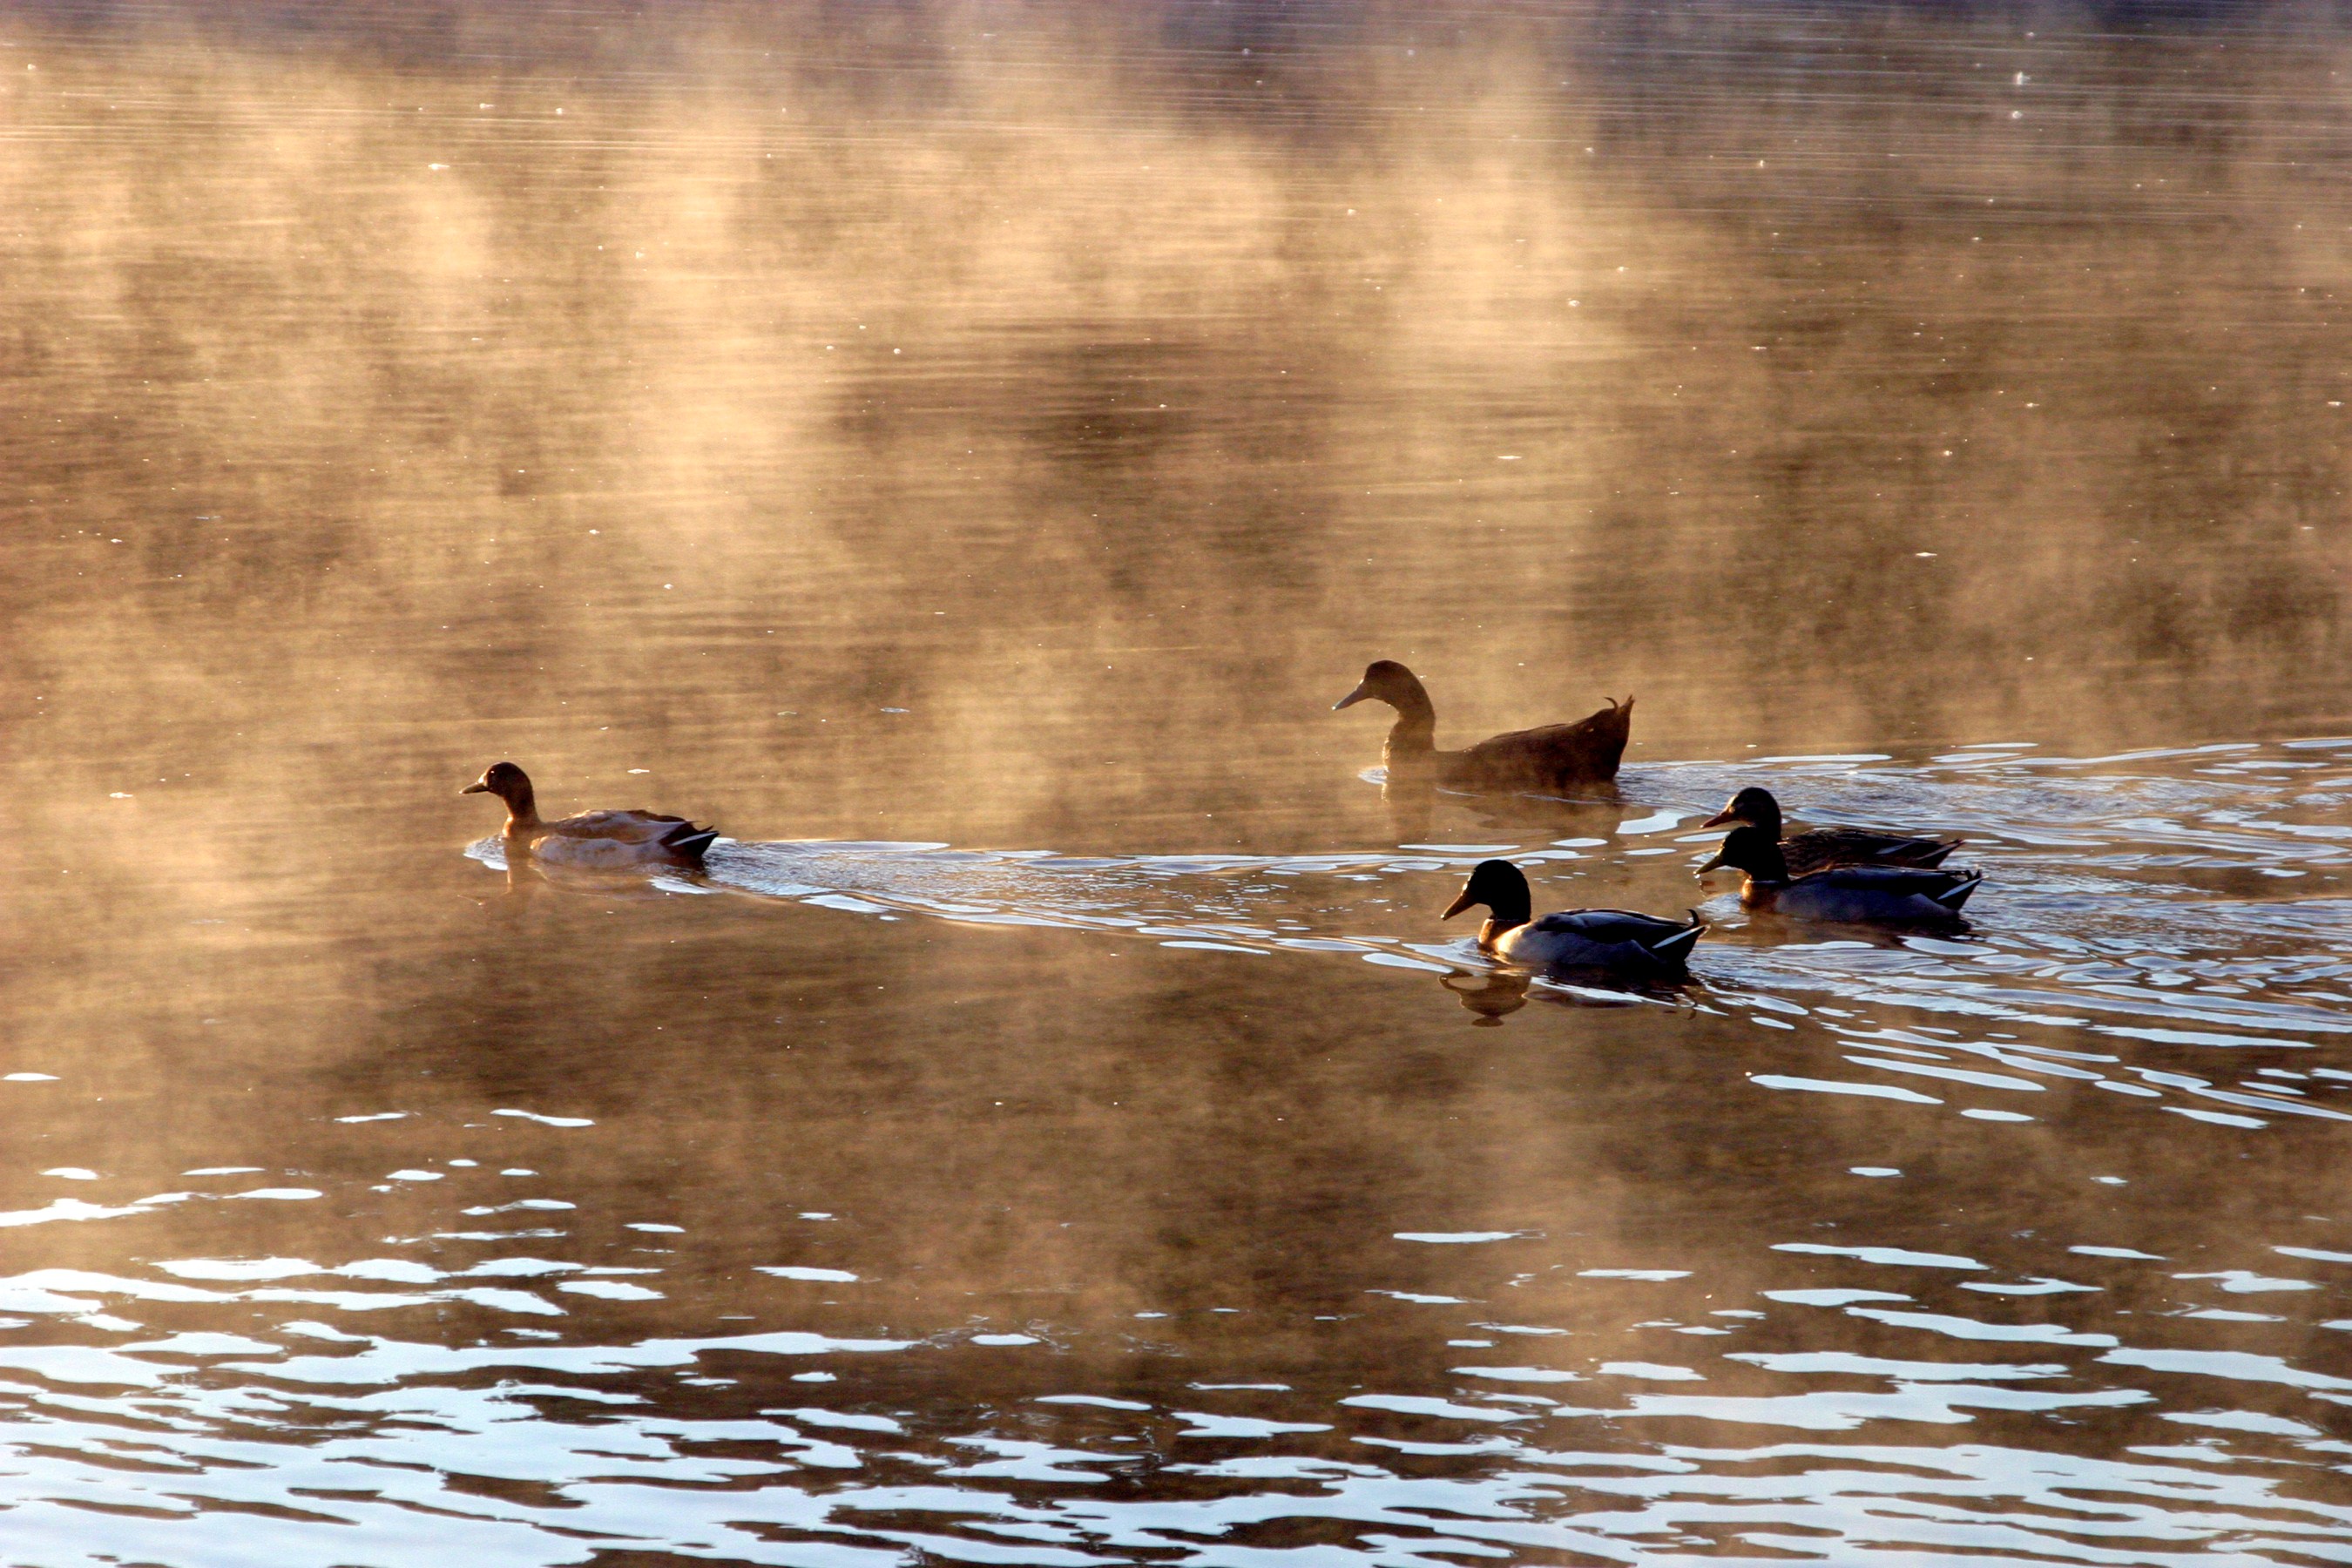 Ducks on lake